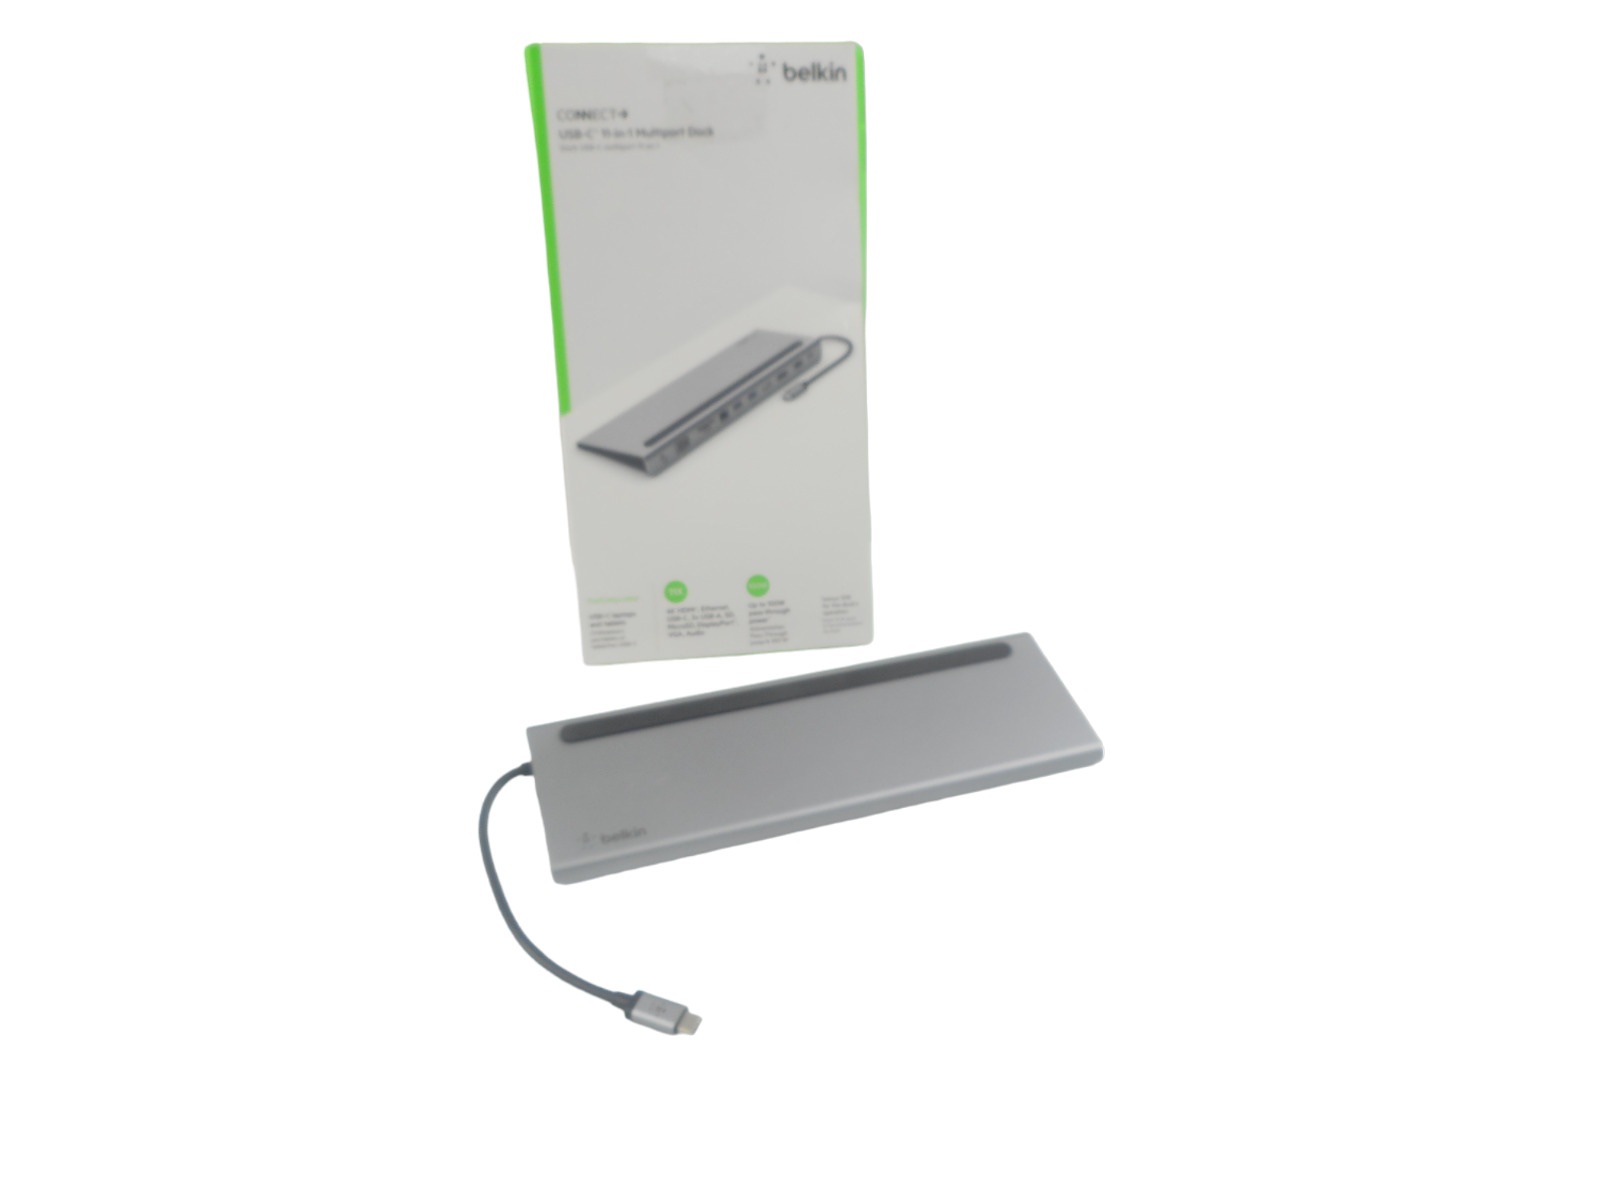 Belkin 11-in-1 USB-C Multiport Dock| MacBook| Windows PC| 4521DN| Gray|